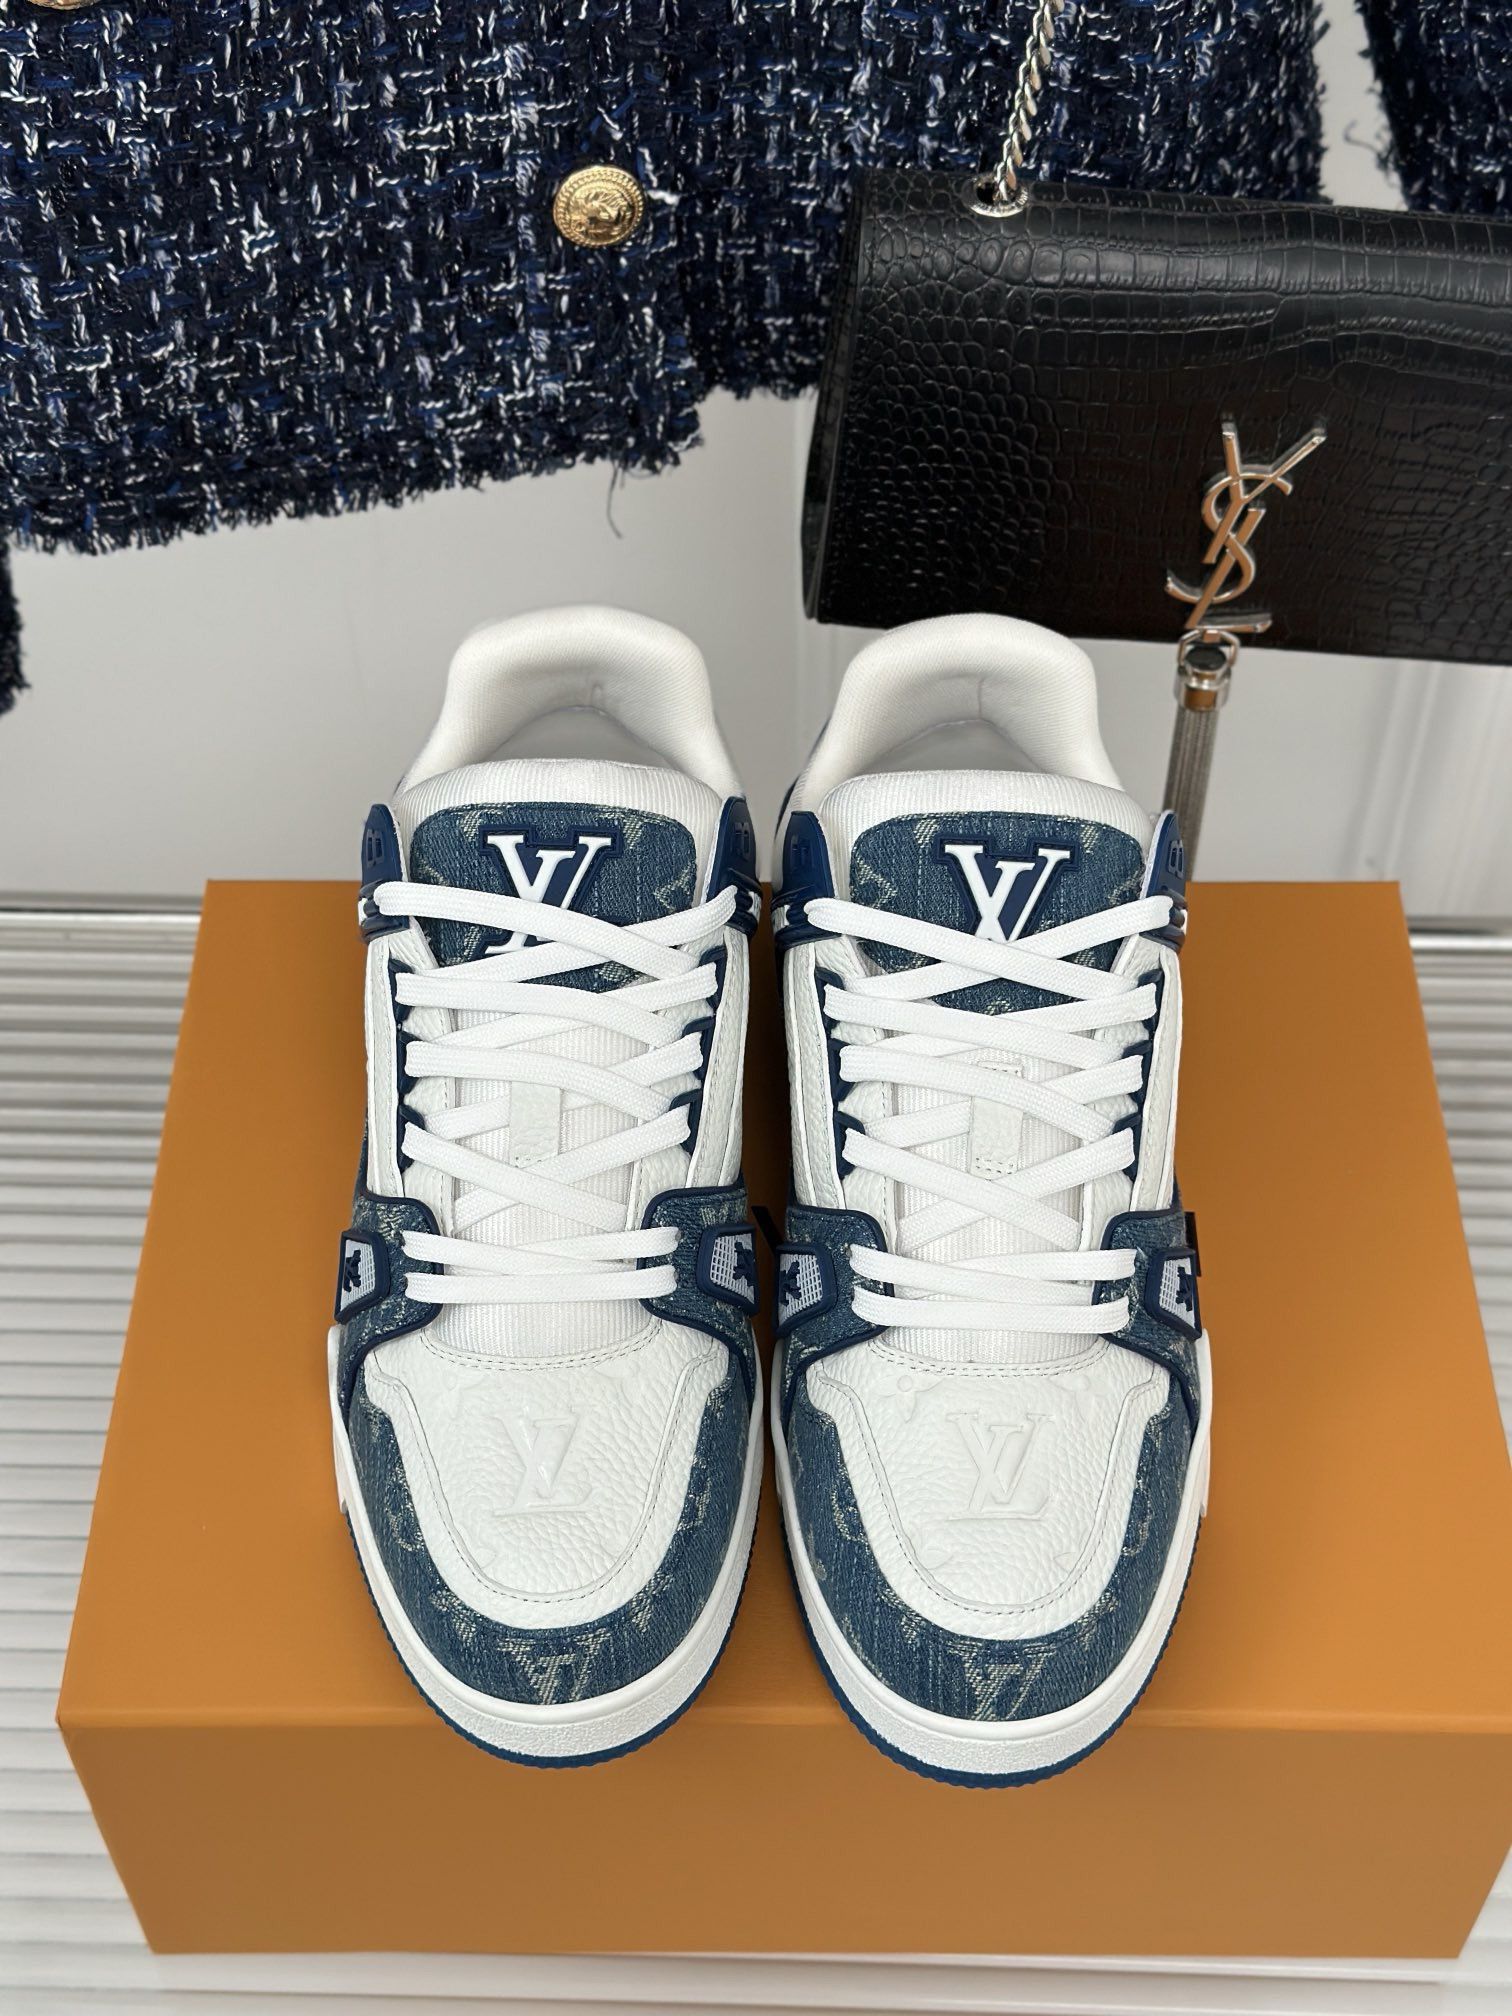 New Louis Vuitton Shoes